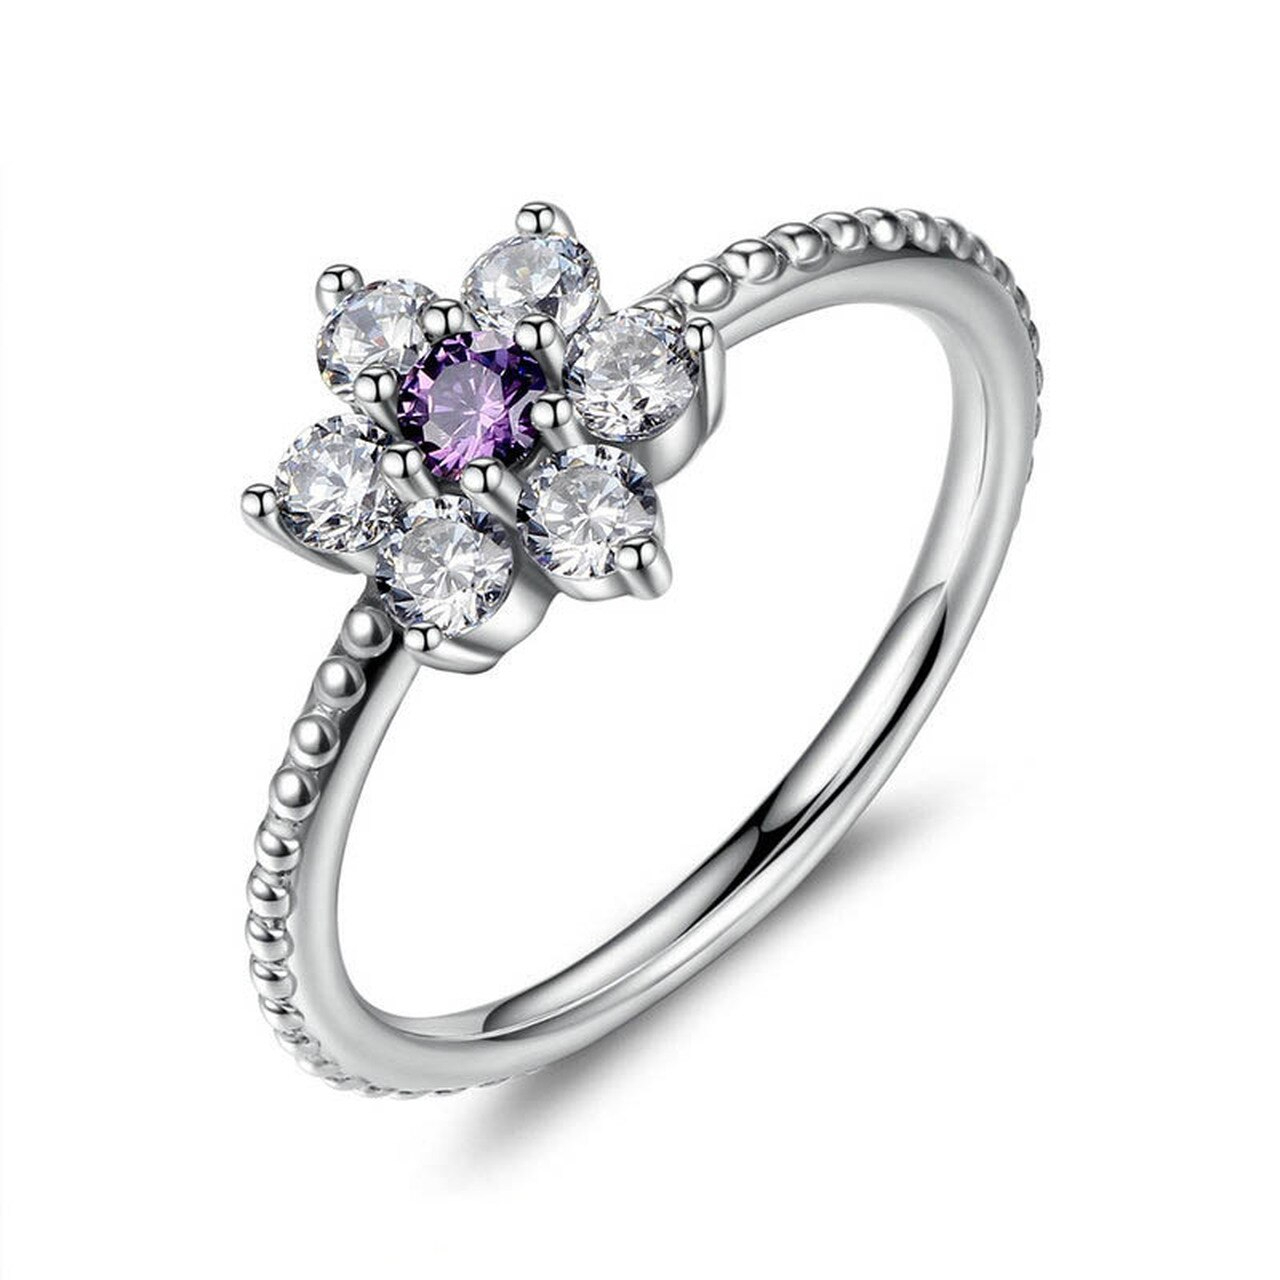 Linda\'s Jewelry Strieborný prsteň Flower Shiny violet Ag 925/1000 IPR023-8 Veľkosť: 54